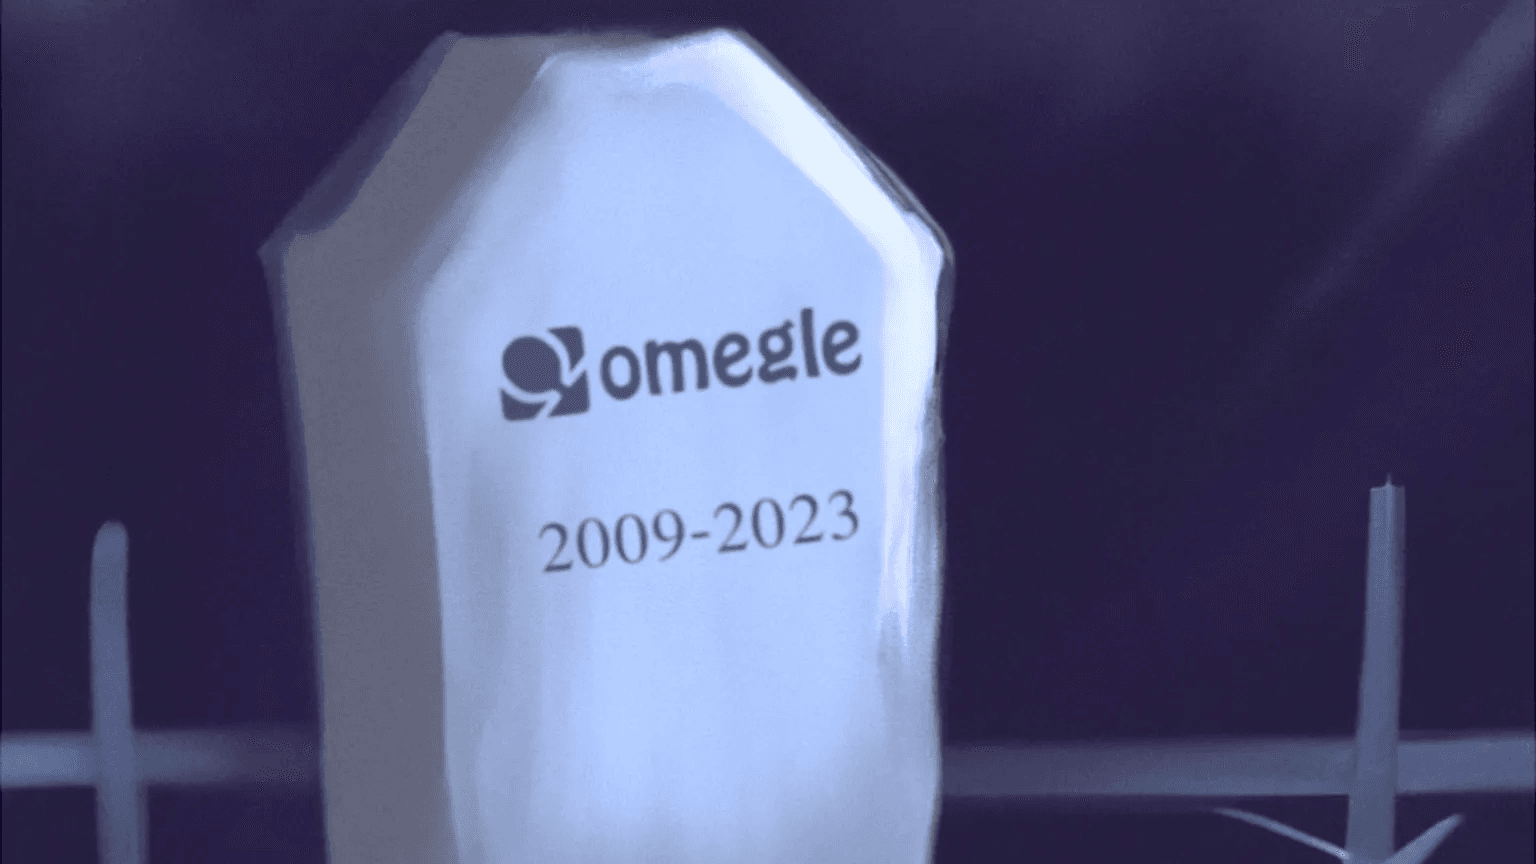 omegle anunció su cierre con imagen de su logotipo sobre una lápida